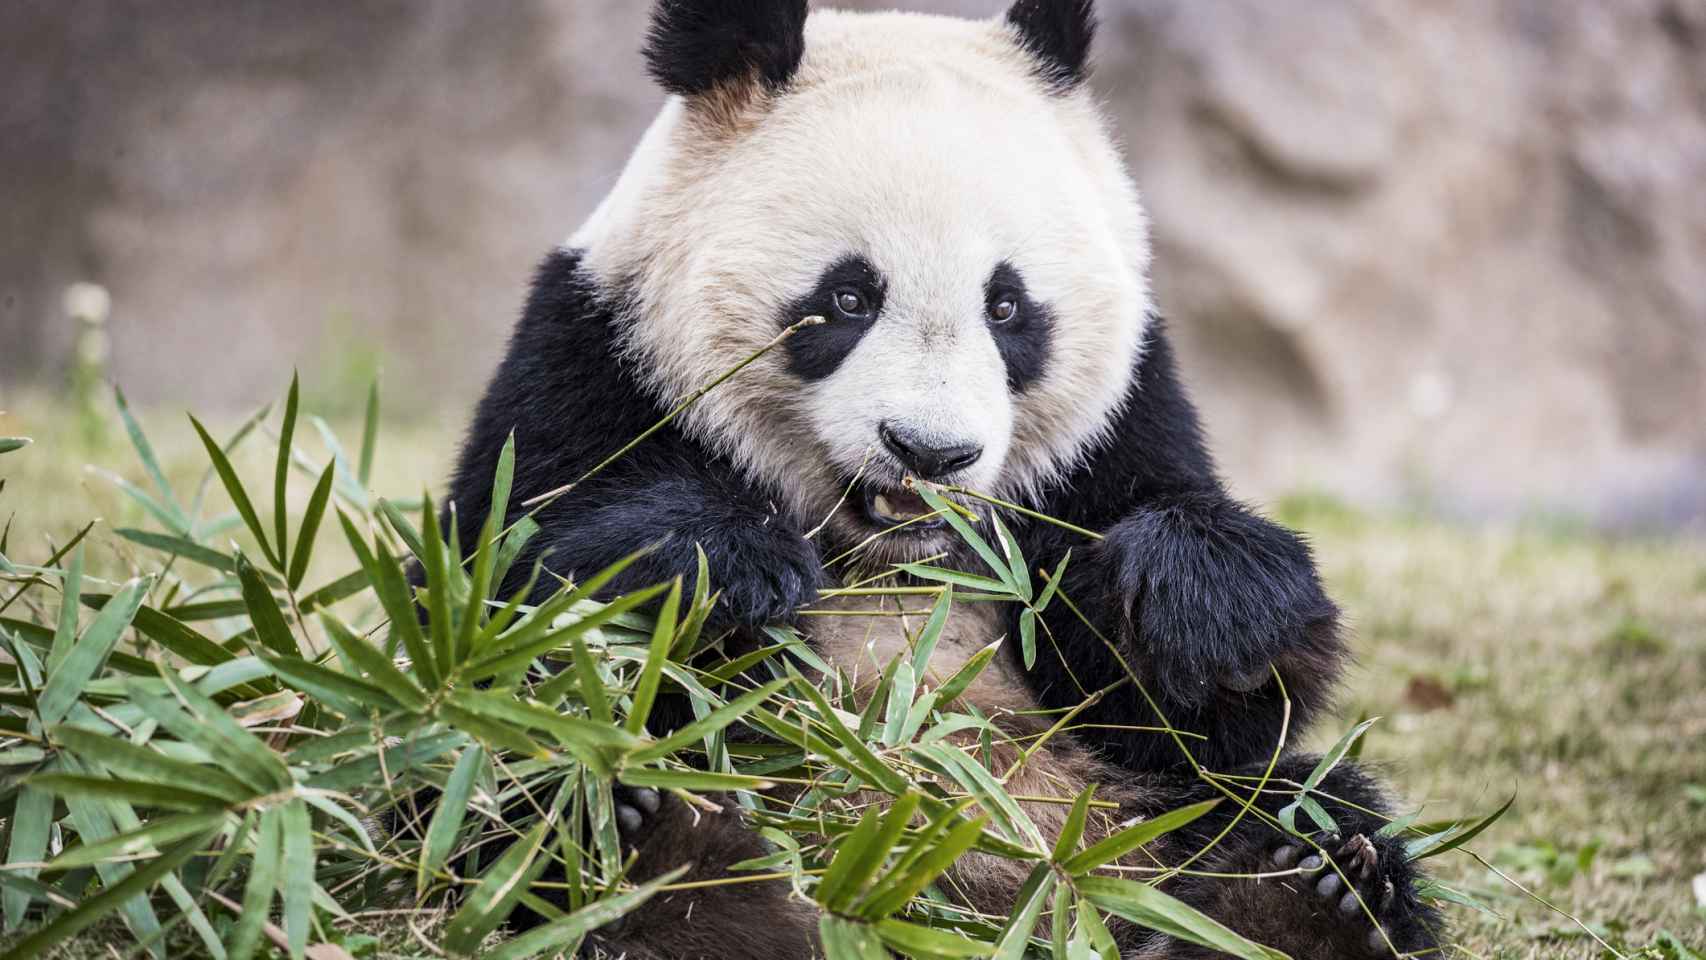 Un oso panda gigante comiendo bambú.